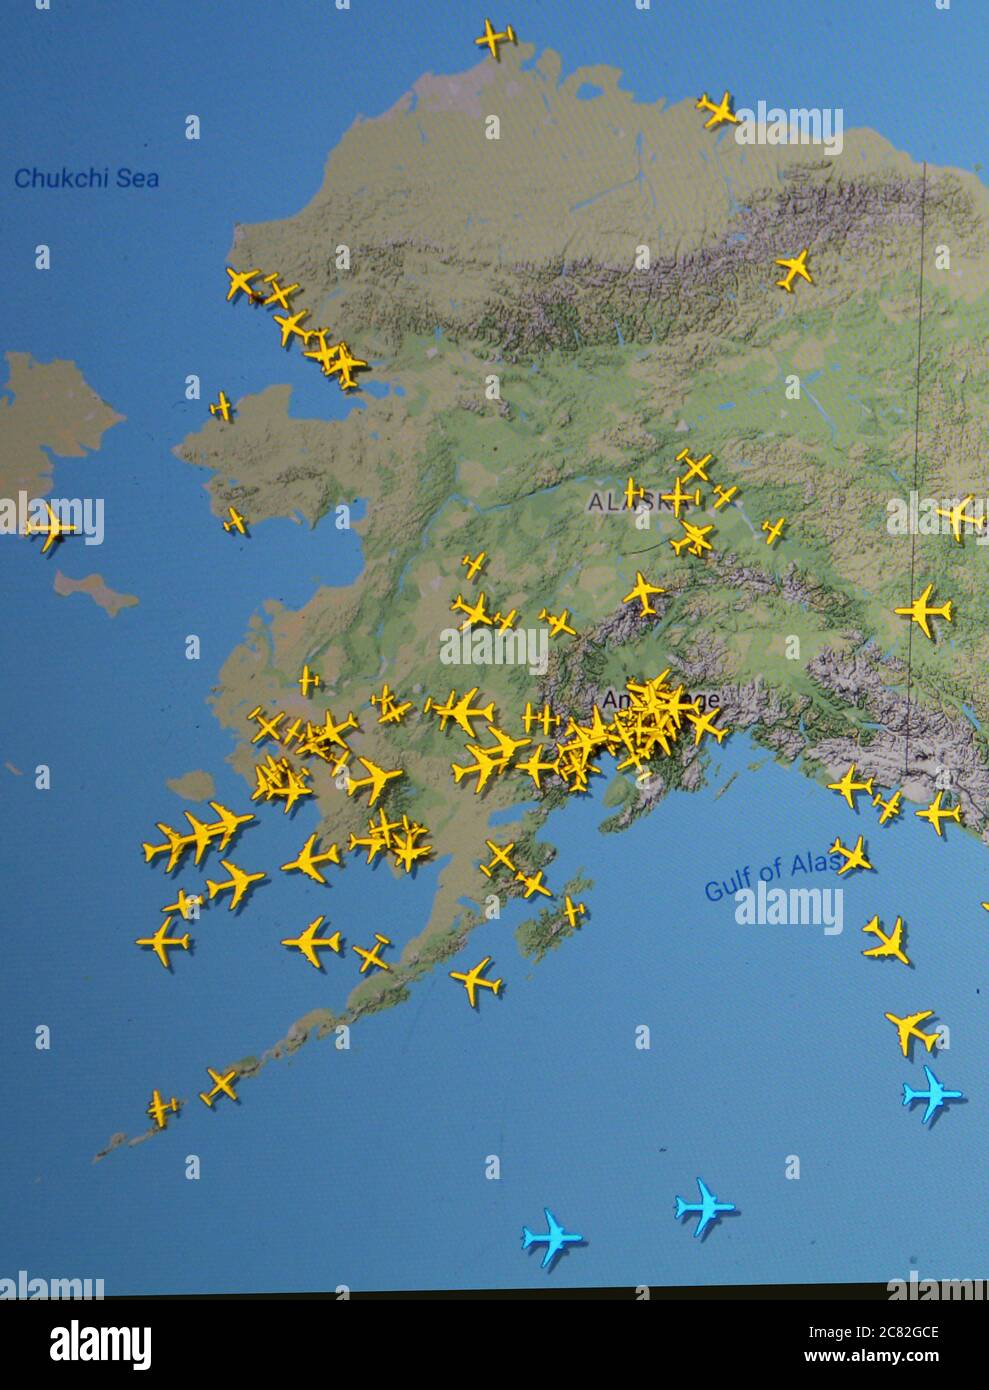 Traffico aereo su Alaska (20 luglio 2020, UTC 20.33) su Internet con il sito Flightradar 24, durante il Coronavirus Pandemic Foto Stock